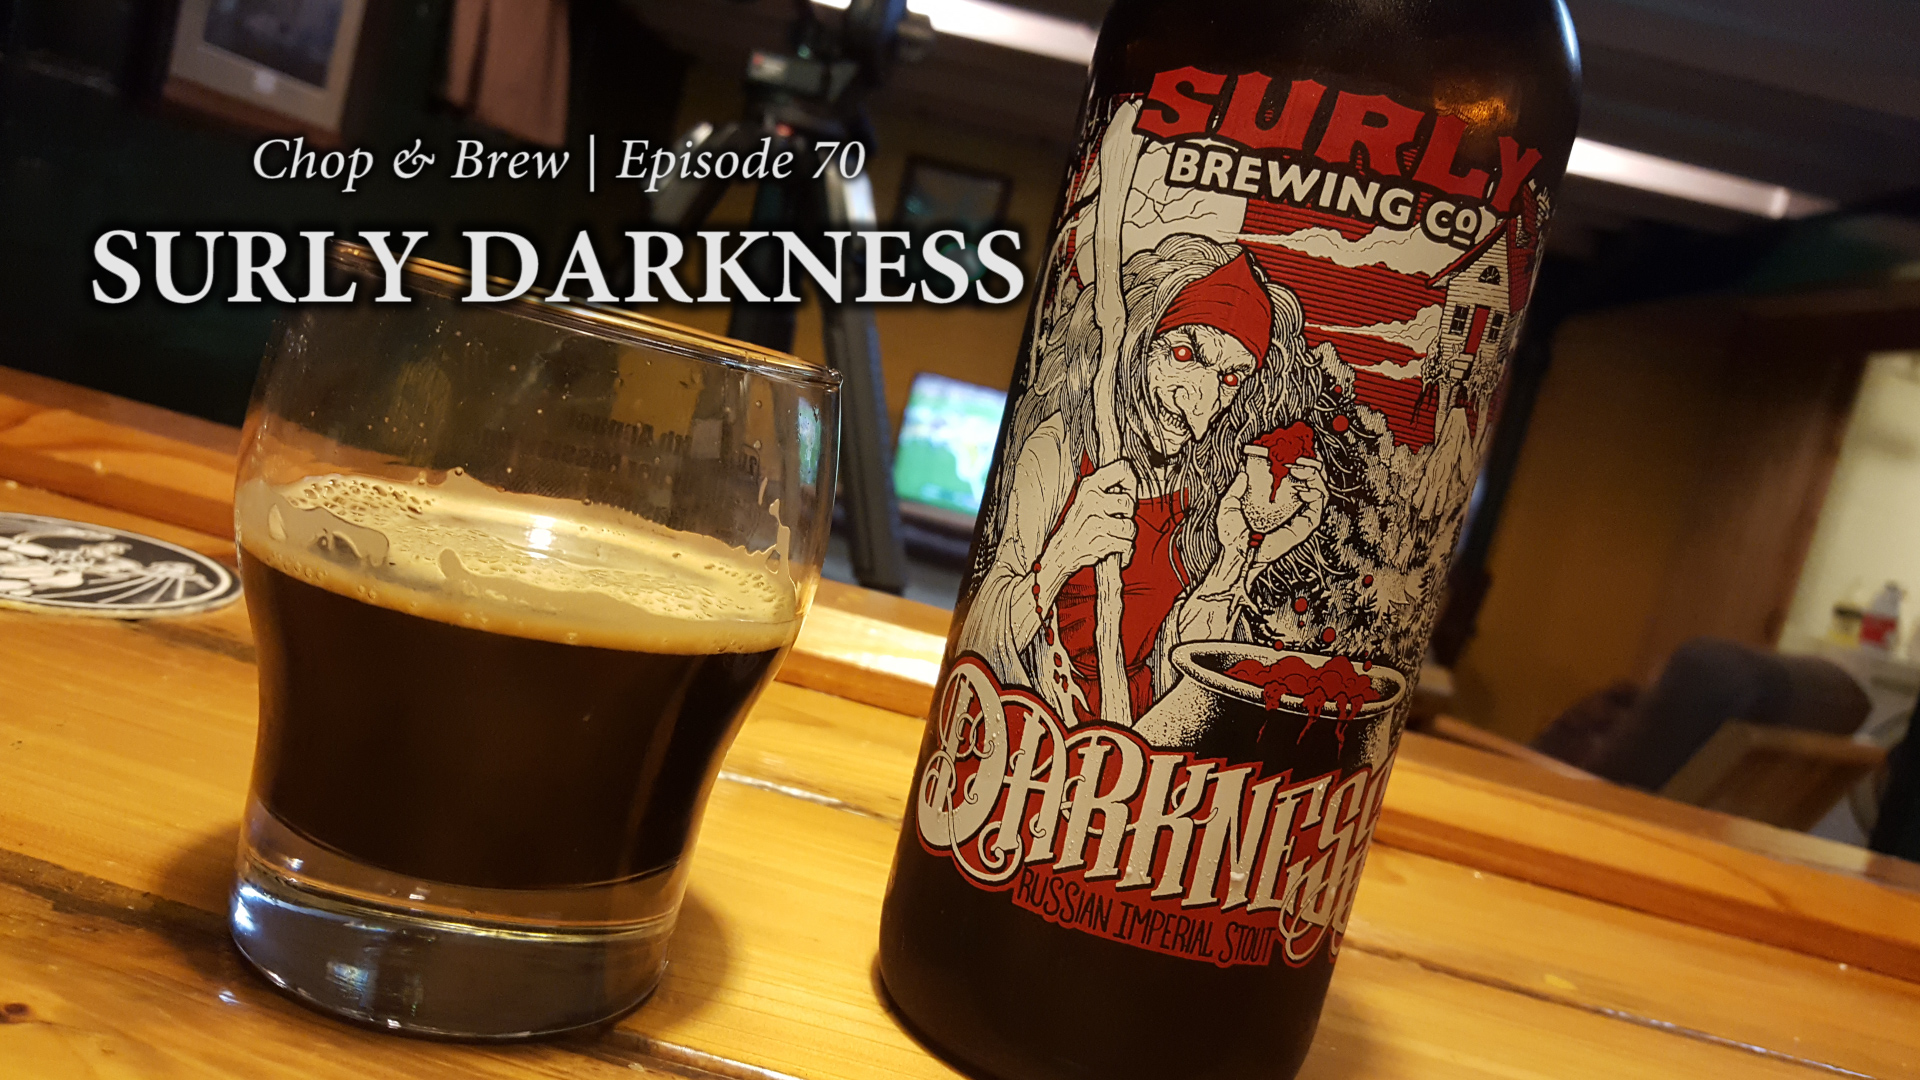 Surly Darkness Chop & Brew